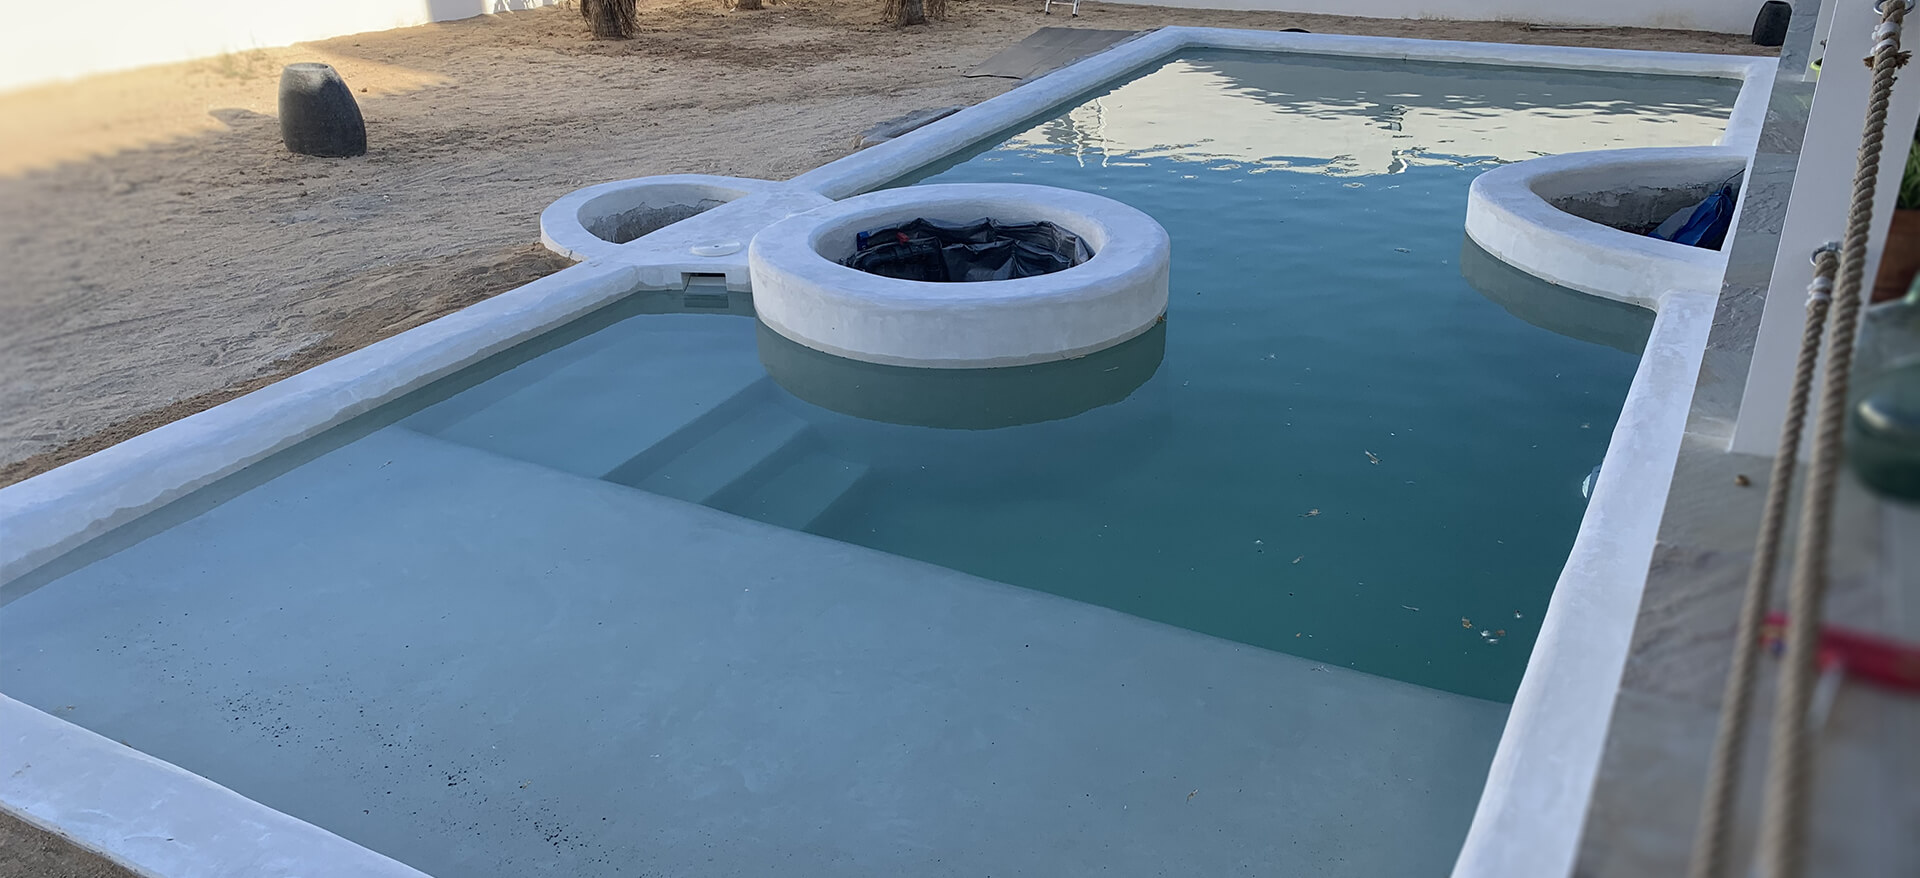 piscina llena, realizada en hormigón proyectado (gunitado) - acabado quartz